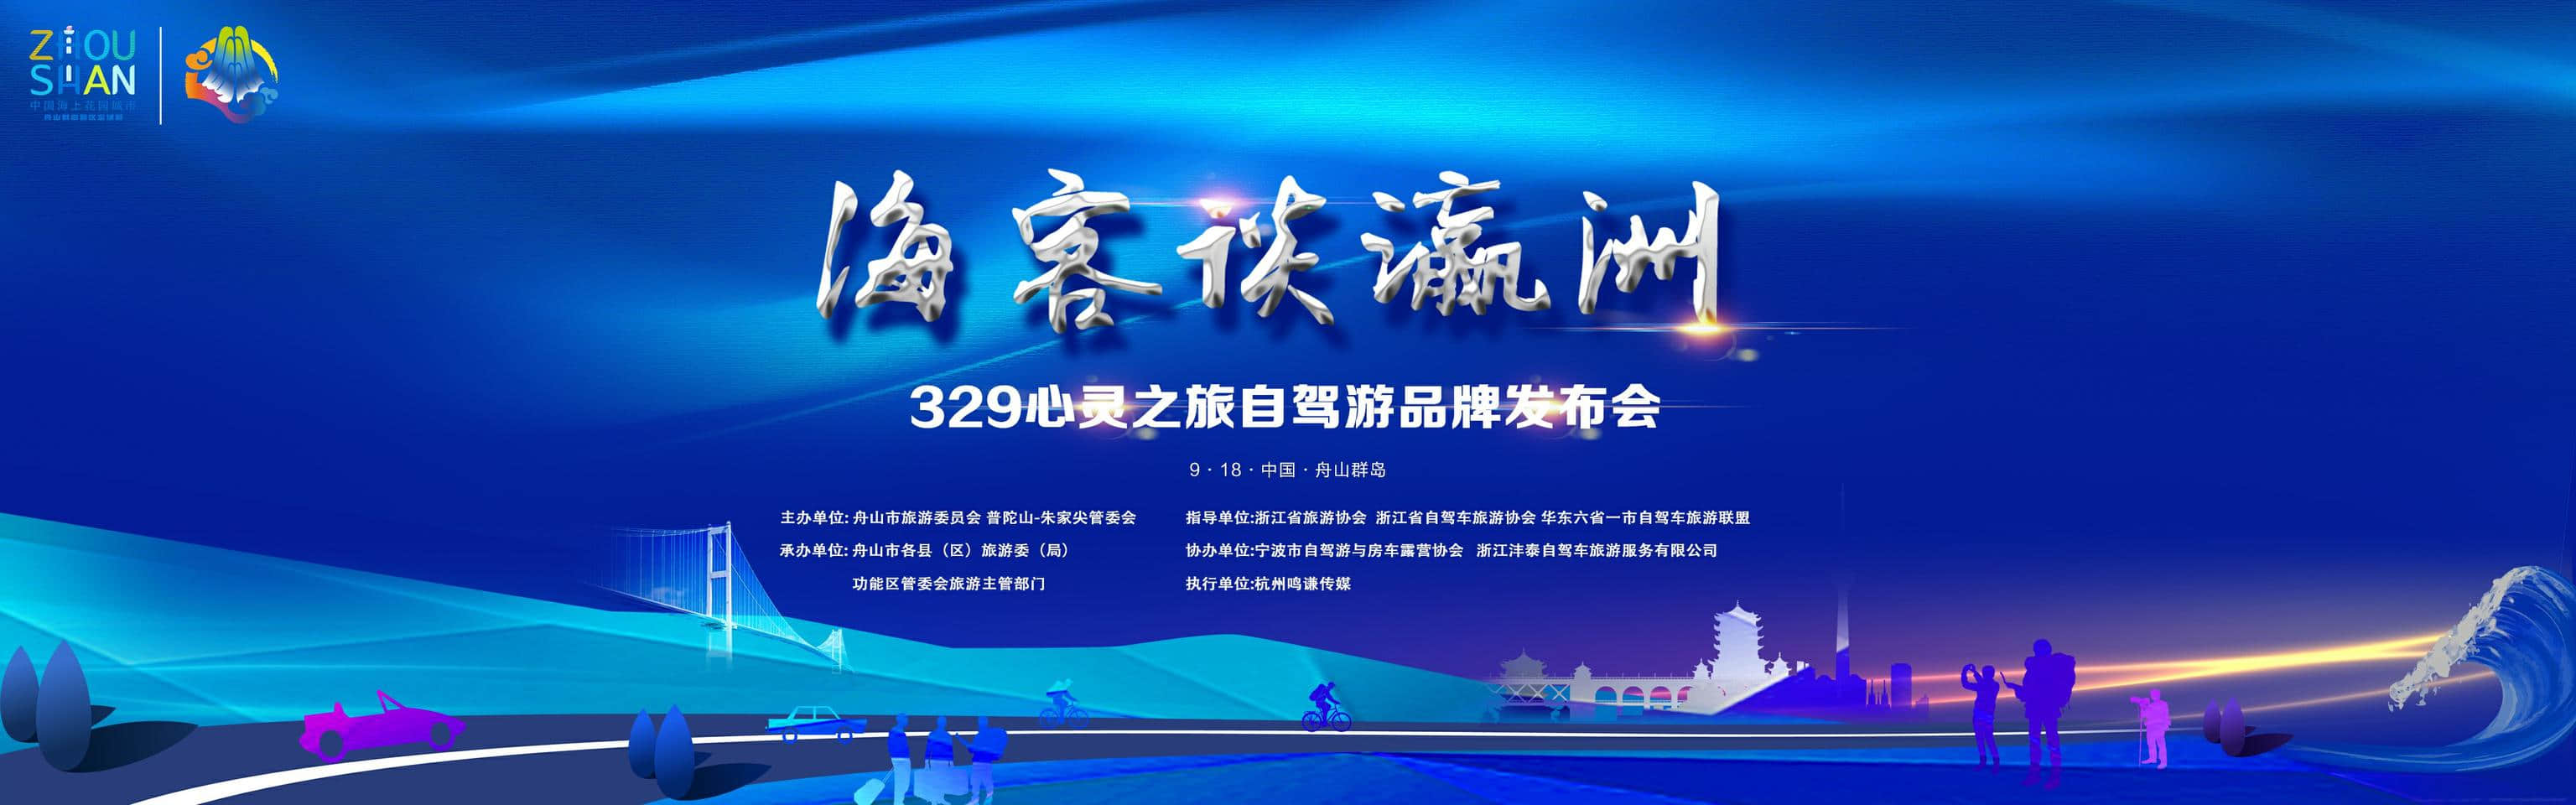 海客谈瀛州329心灵之旅自驾游品牌发布会 成功举办